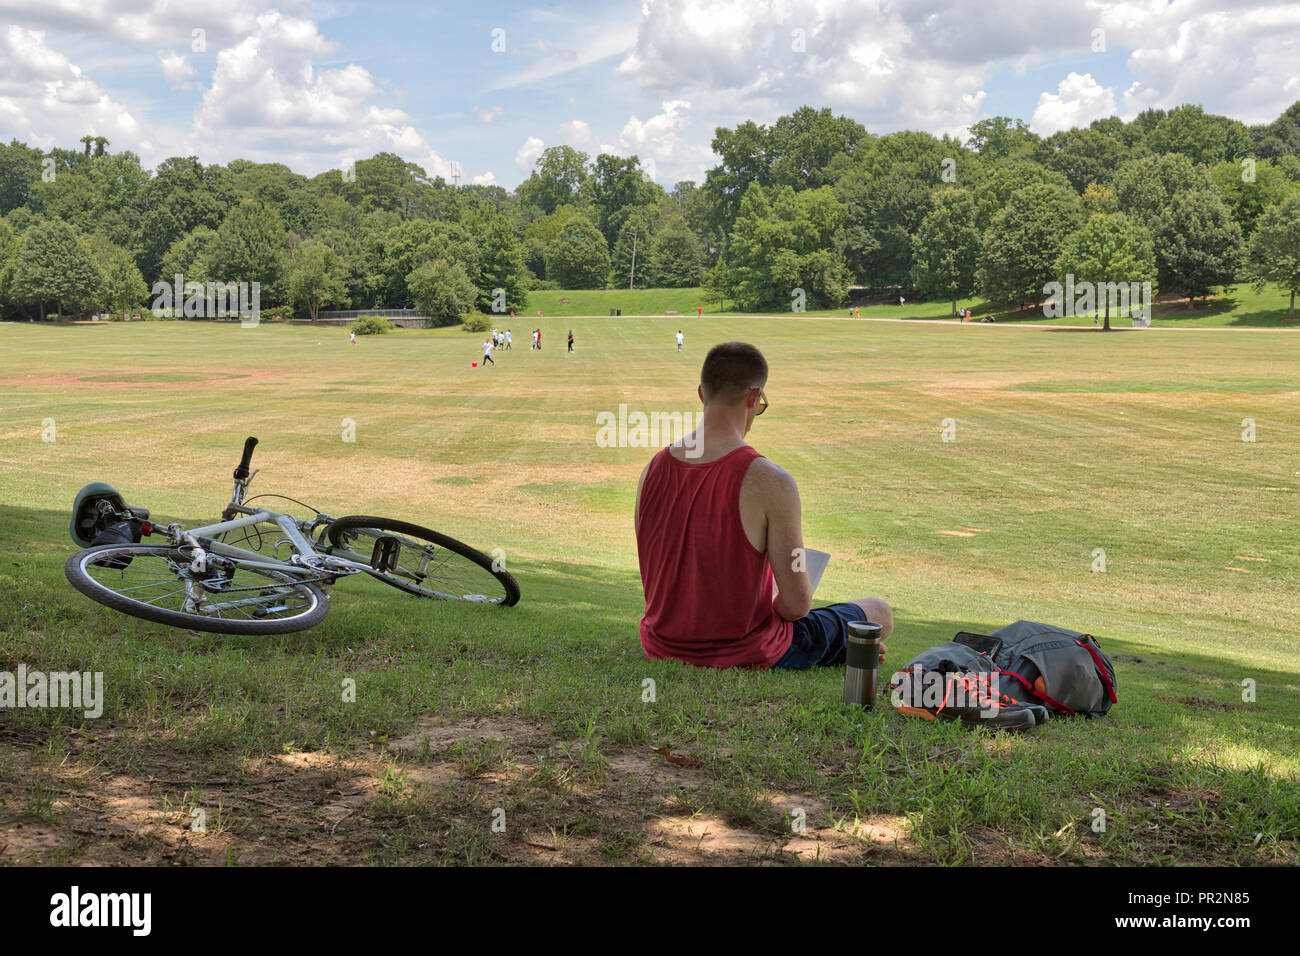 Persona non identificabili la lettura di un libro in Piemonte Park in una giornata di sole con una bici e zaino e altre persone a giocare nella distanza sul verde gr Foto Stock